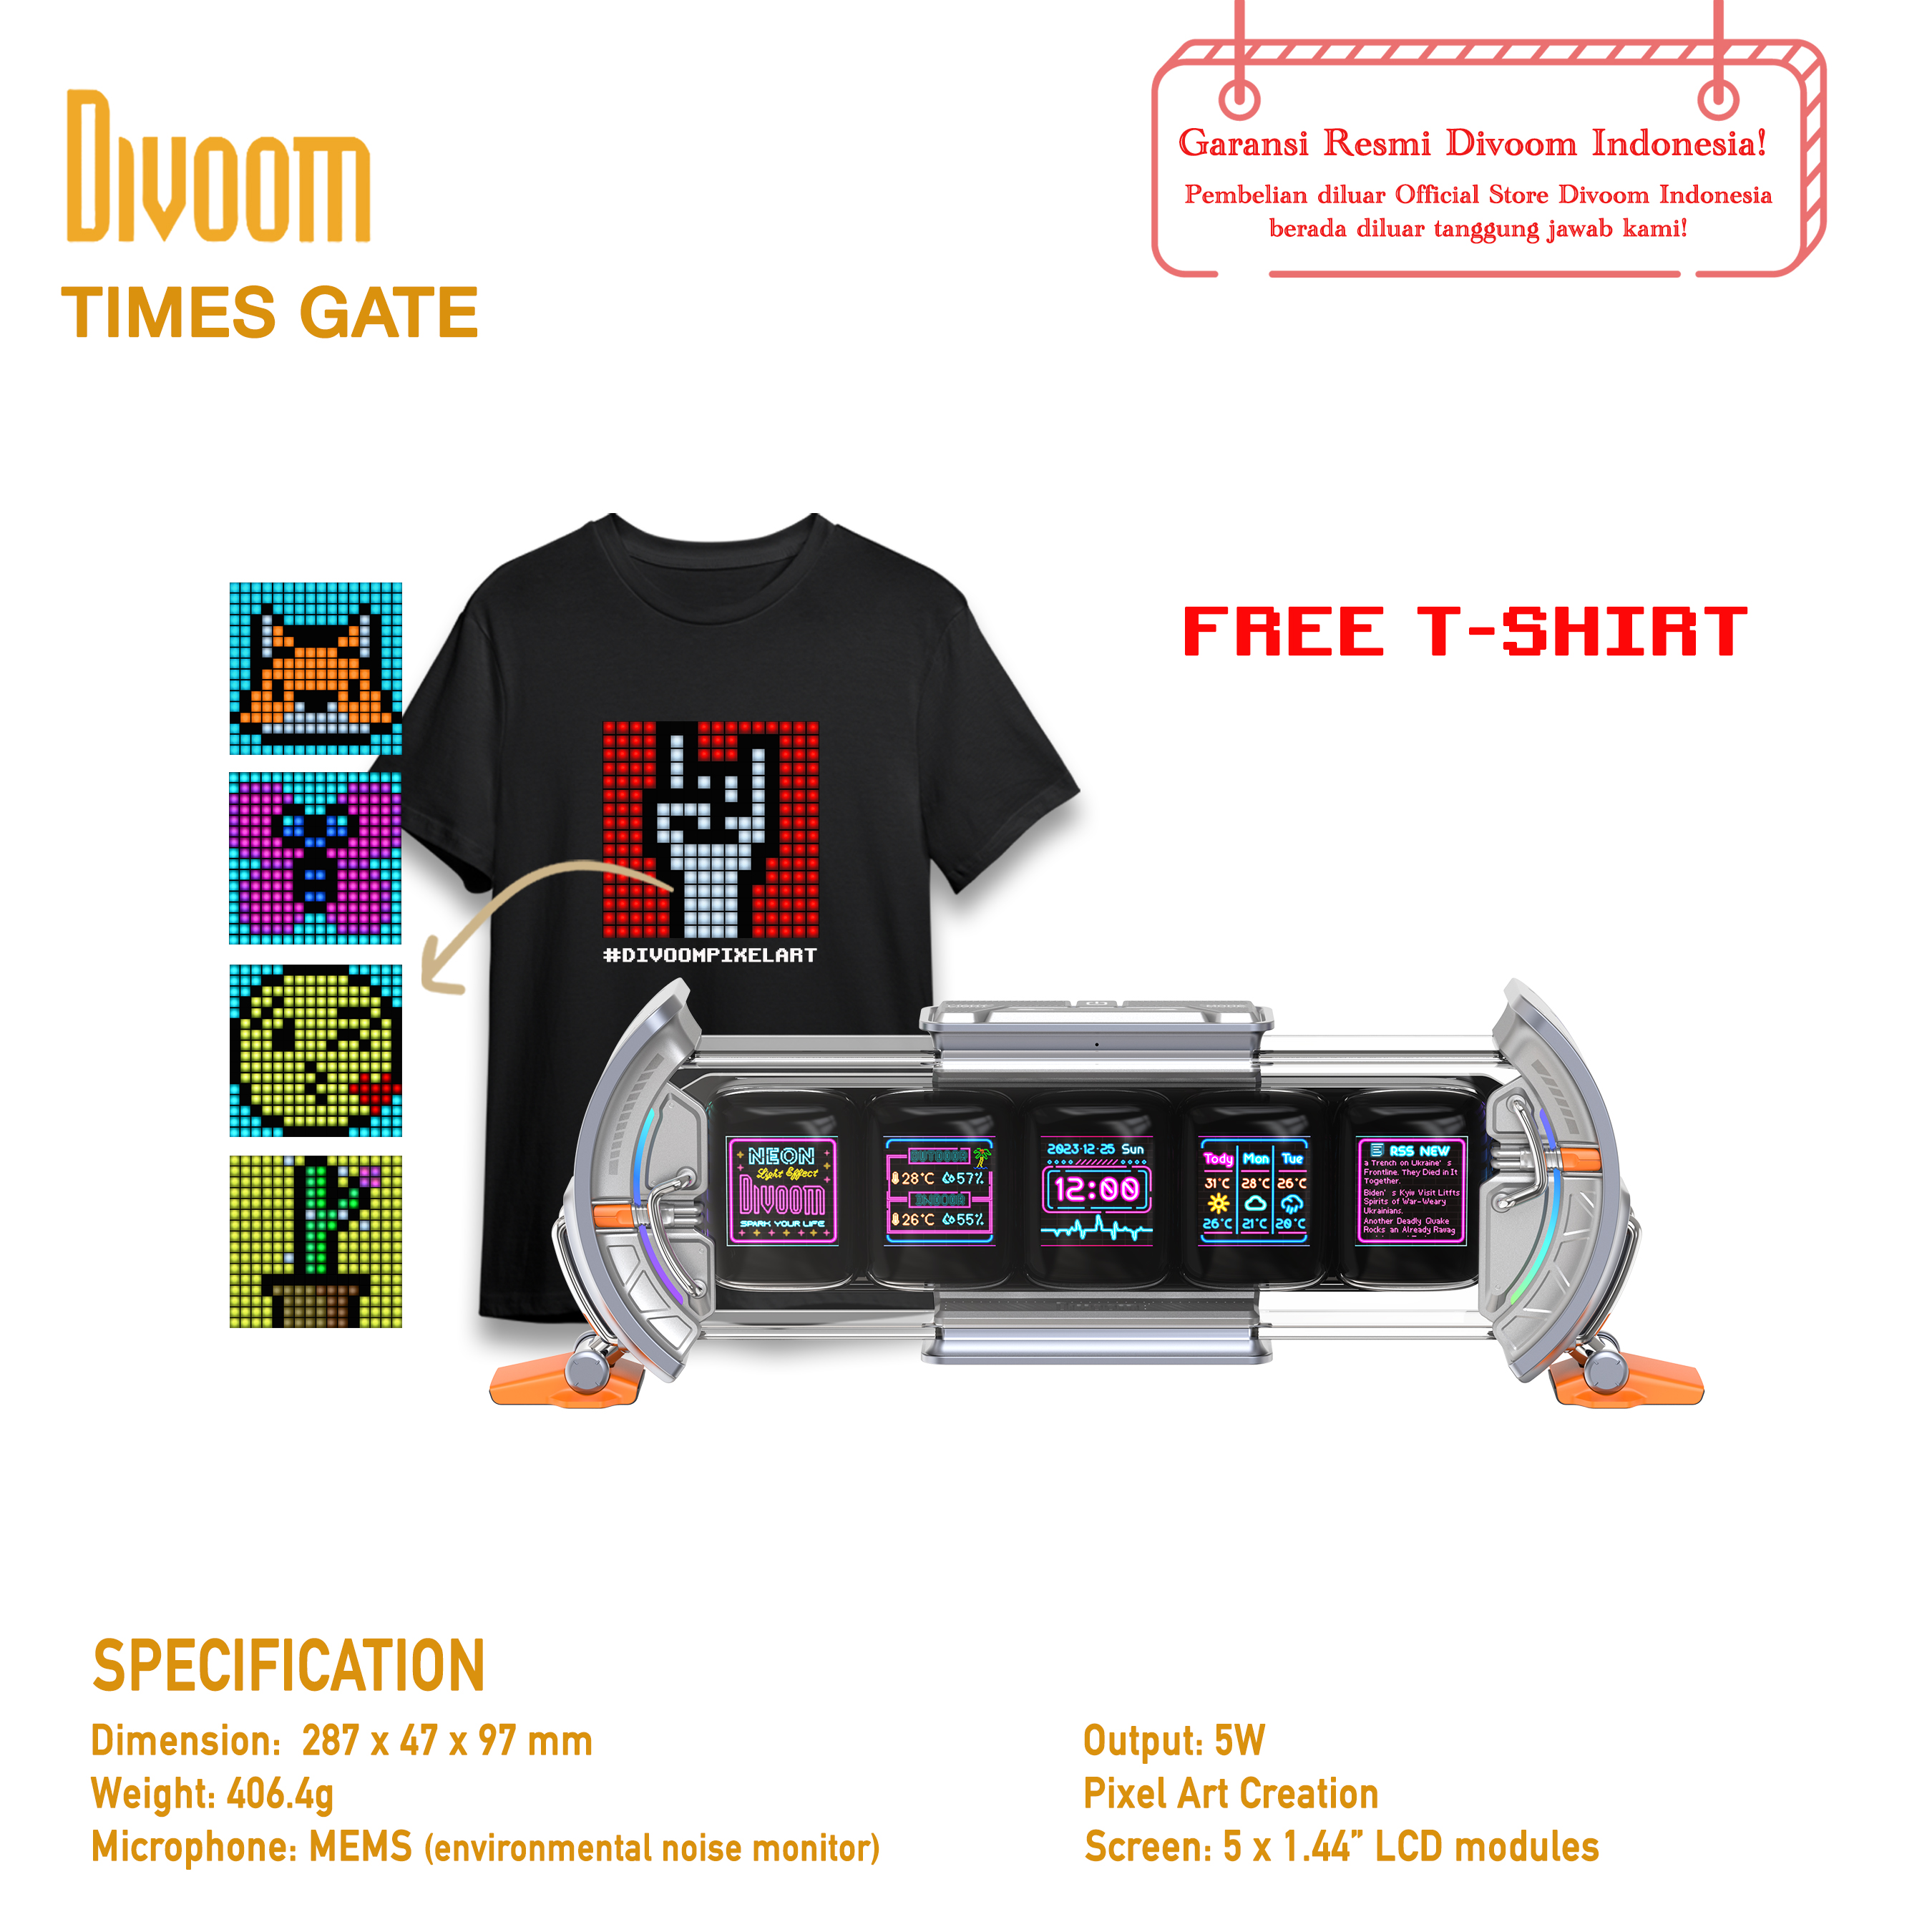 Promo Divoom Times Gate Pixel Art Informative Display Diskon 26% di Seller  Divoom Official Store - Mangga Dua Selatan, Kota Jakarta Pusat